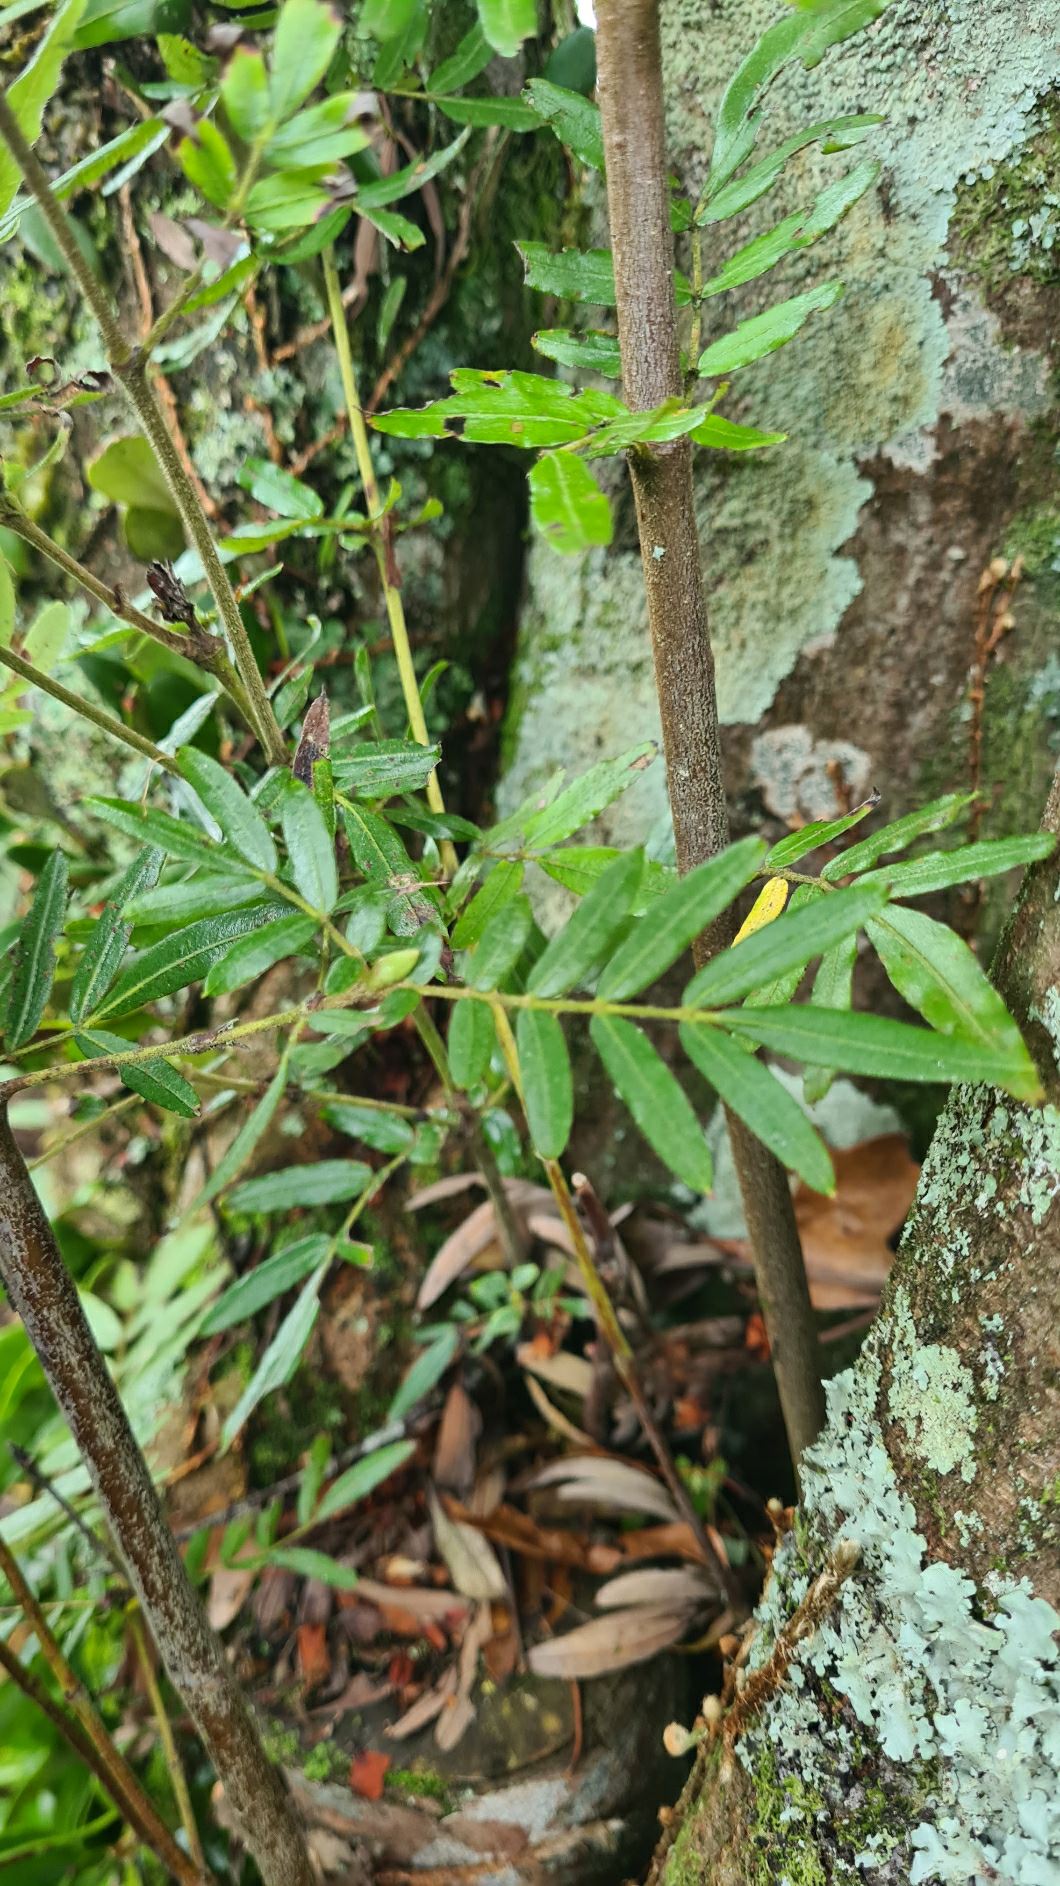 Eucryphia moorei - stinkwood, pinkwood, plum tree